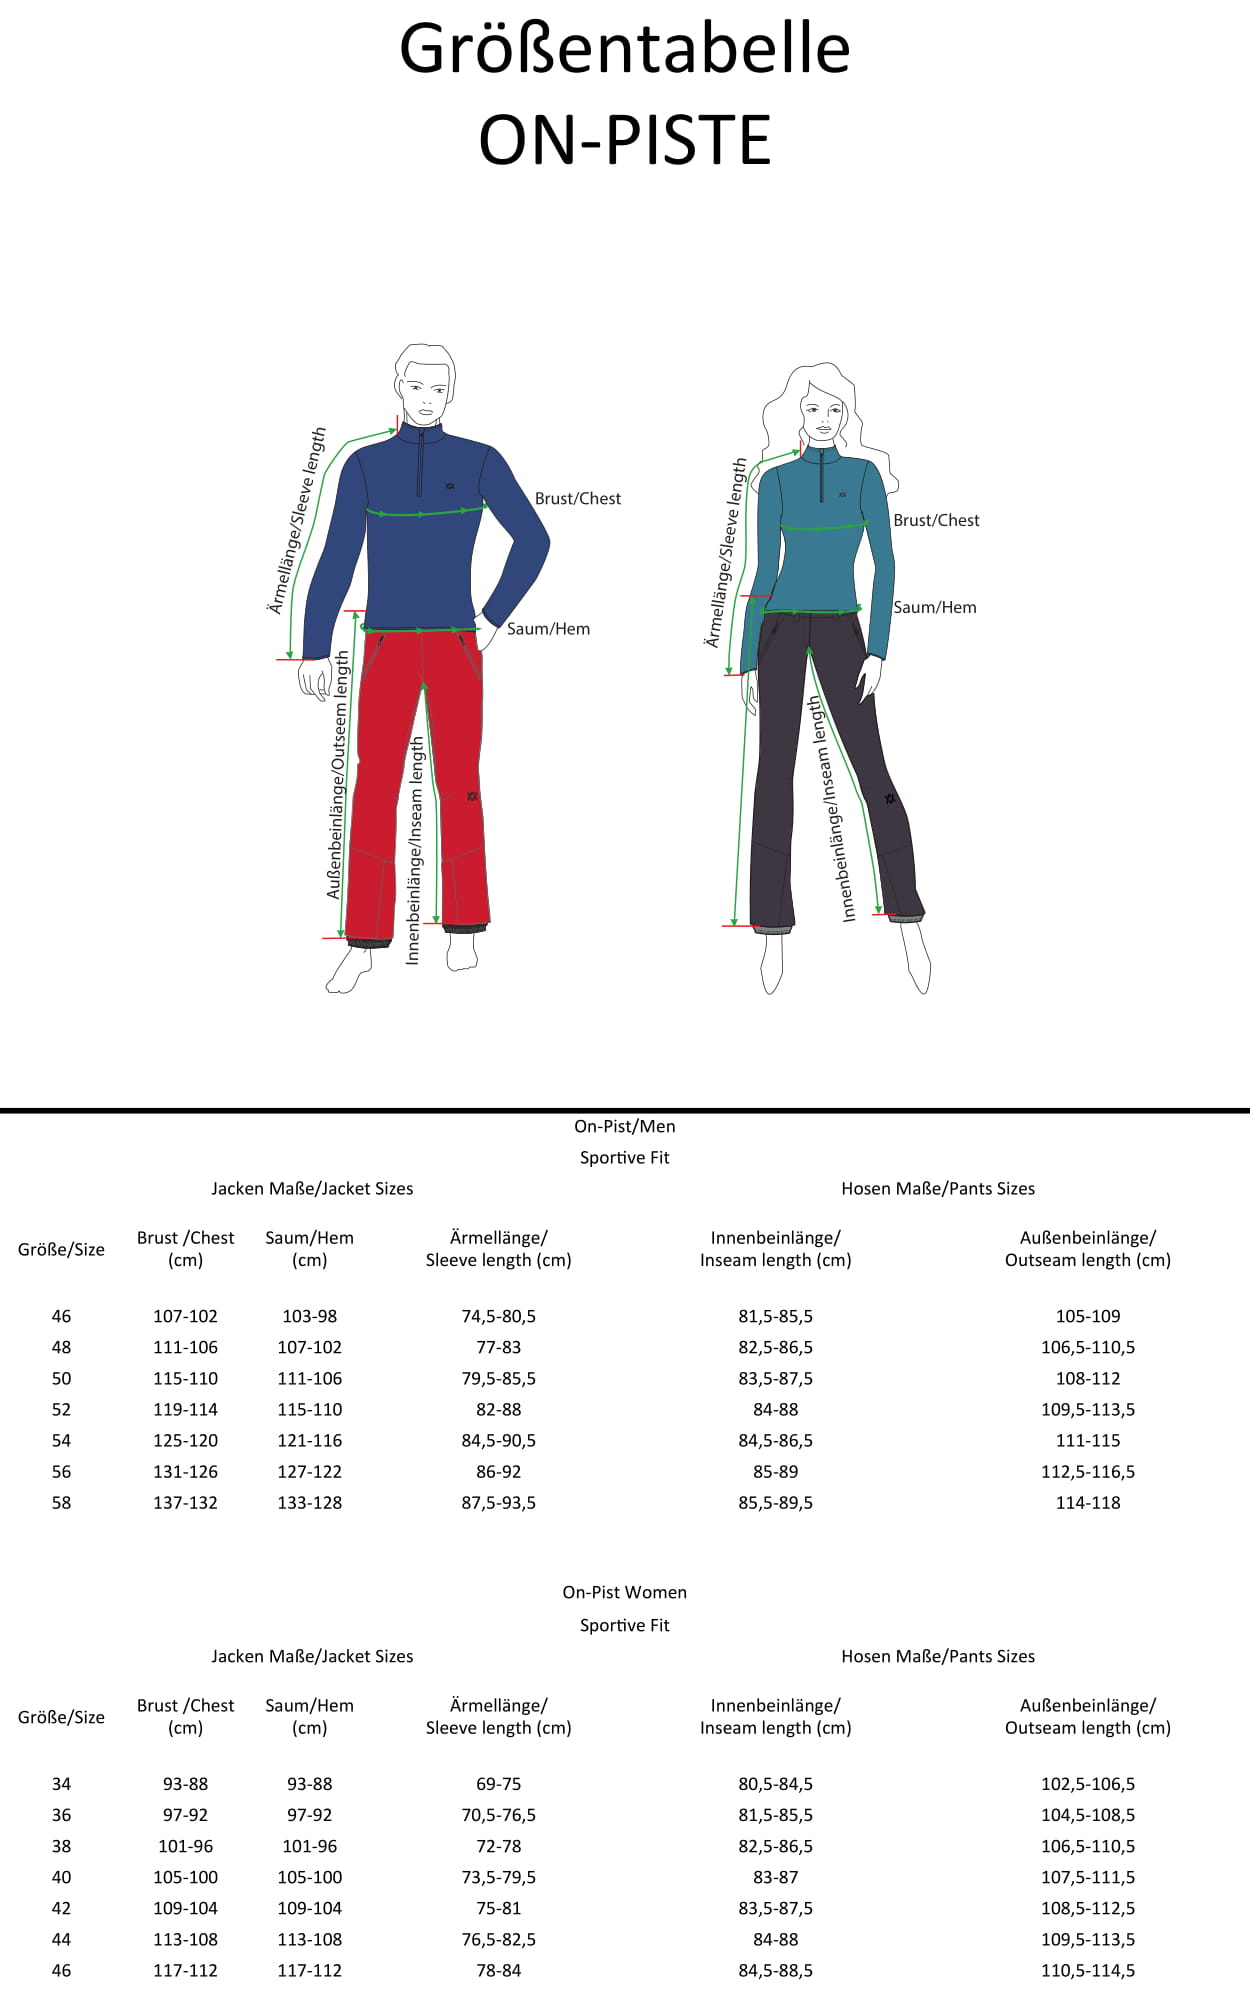 Volkl Ski Size Chart